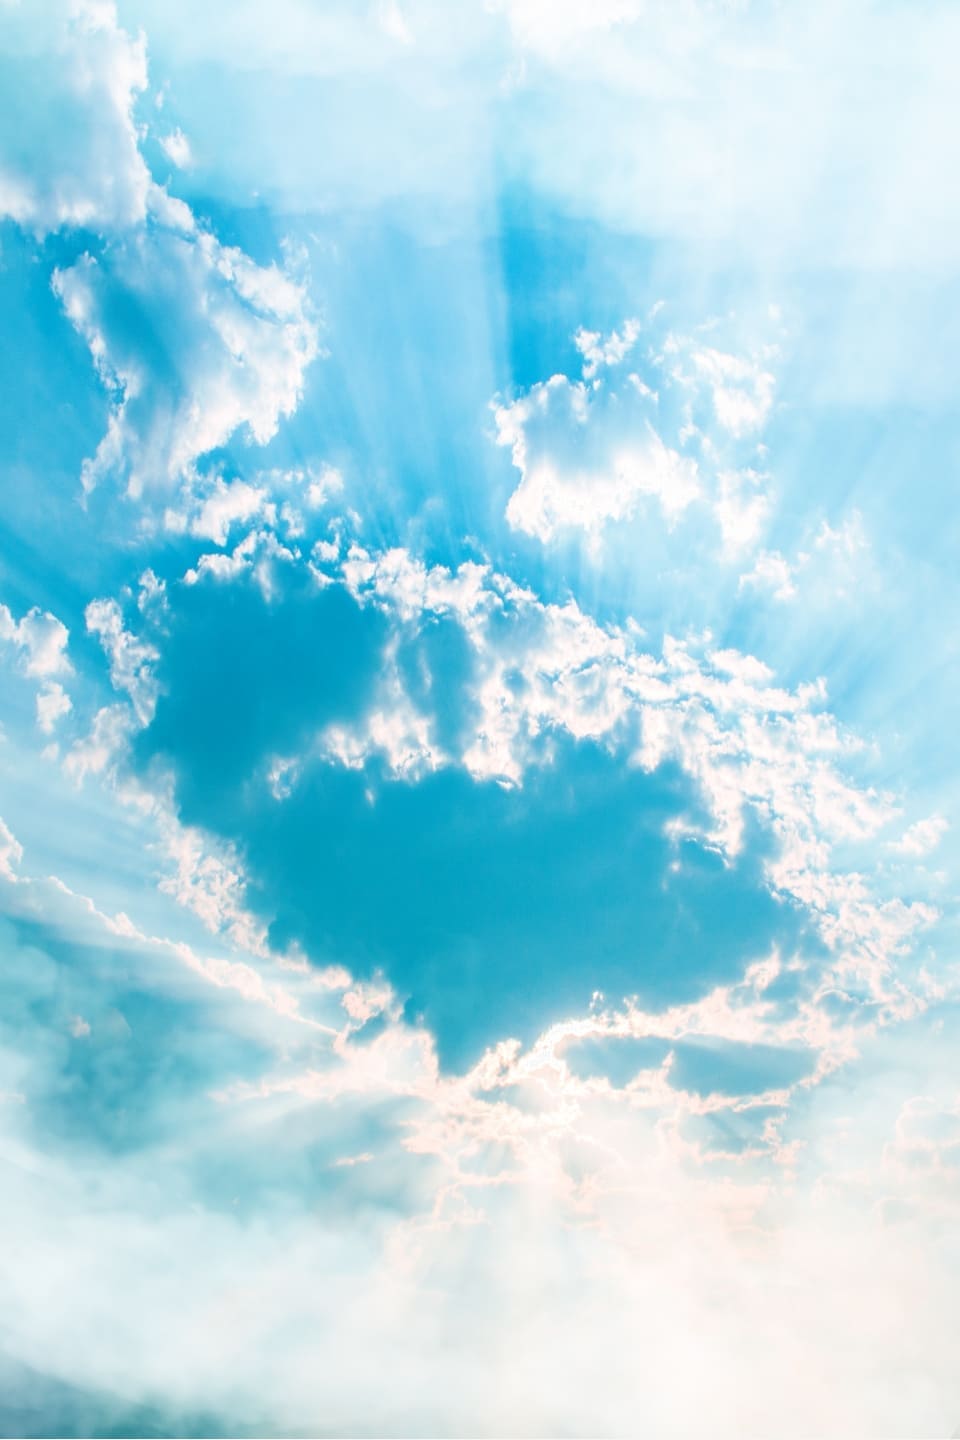 Ảnh miễn phí: bầu trời xanh và những đám mây trắng, thời tiết tốt, bầu trời  trong xanh | Hippopx